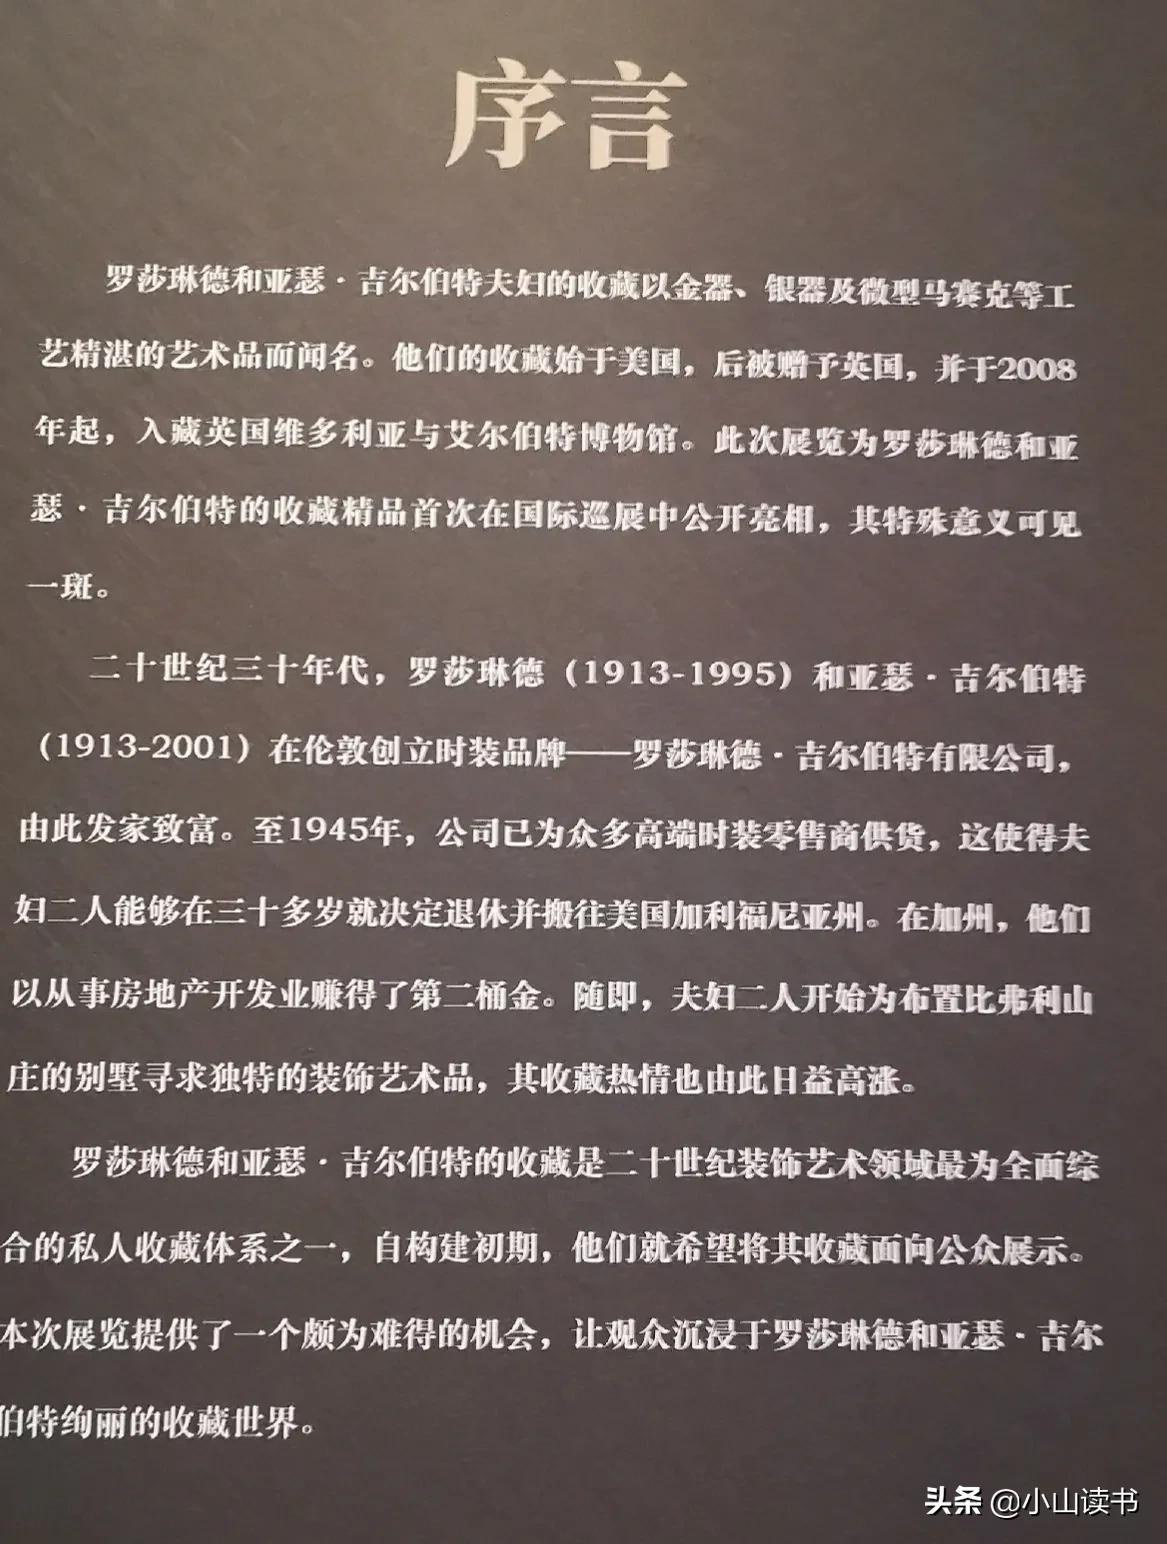 河南博物馆观后感300字选录86条（微观之作：艺术细节之美的感受与触摸——棒极了）